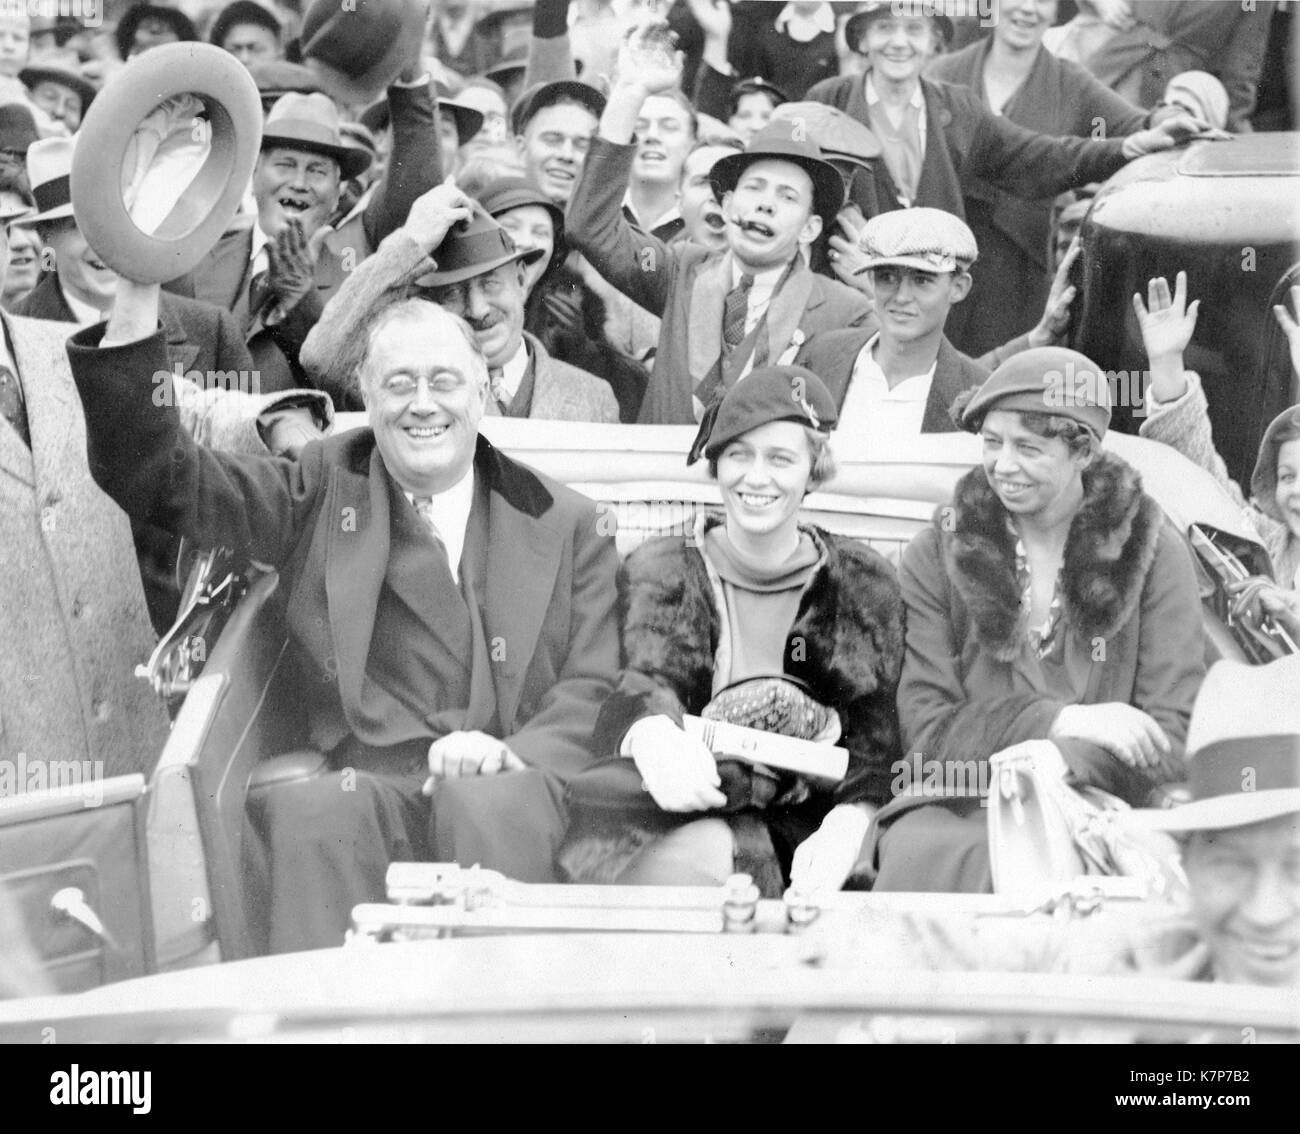 Franklin D Roosevelt in viaggio in auto con la figlia Anna Roosevelt Halsted (centro) e Eleanor Roosevelt, Warm Springs, GA, 10/24/1932. Foto Stock